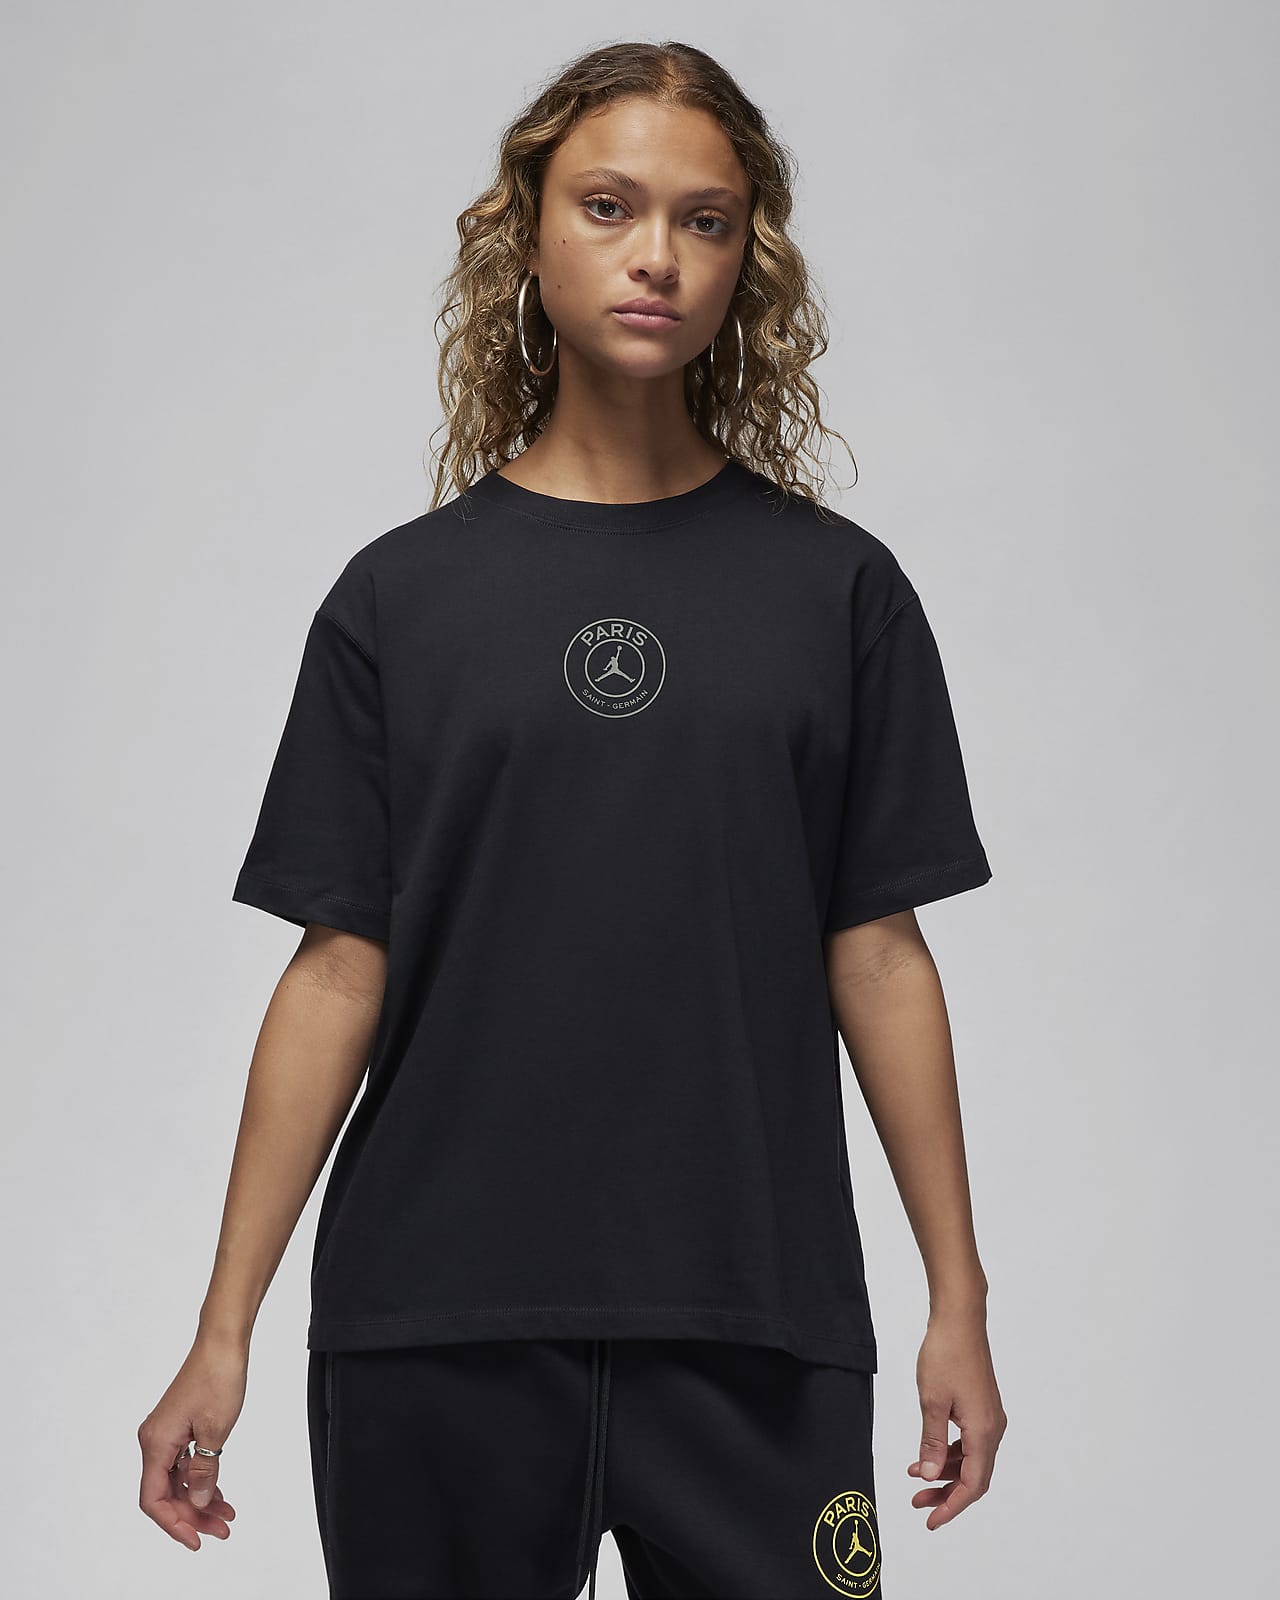 Γυναικείο ποδοσφαιρικό T-Shirt με σχέδιο Jordan Παρί Σεν Ζερμέν